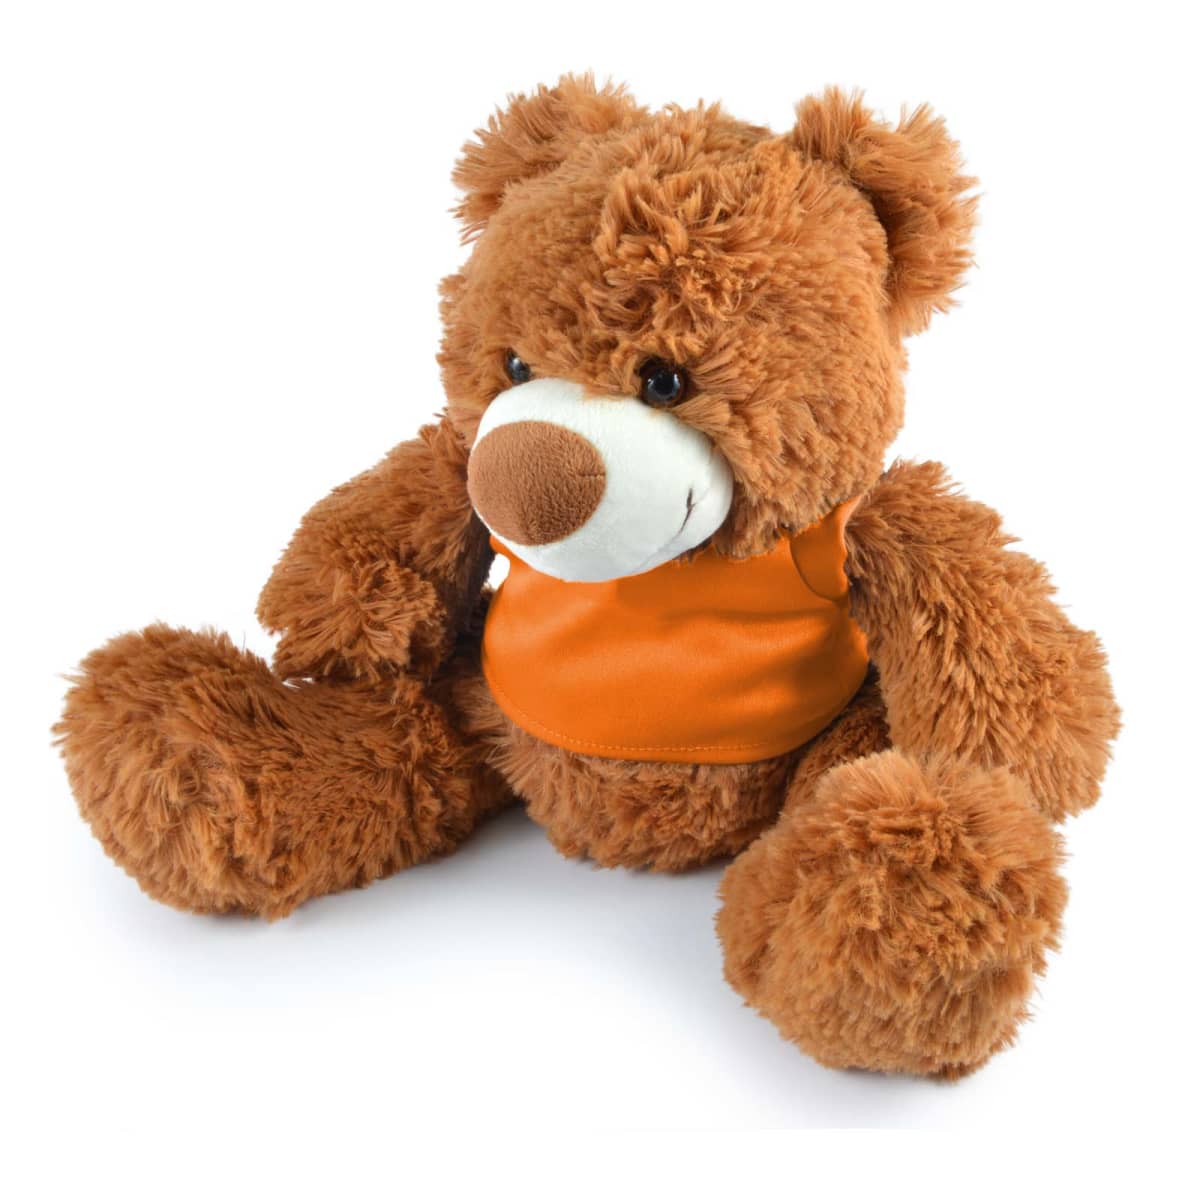 Coco Plush Teddy Bear